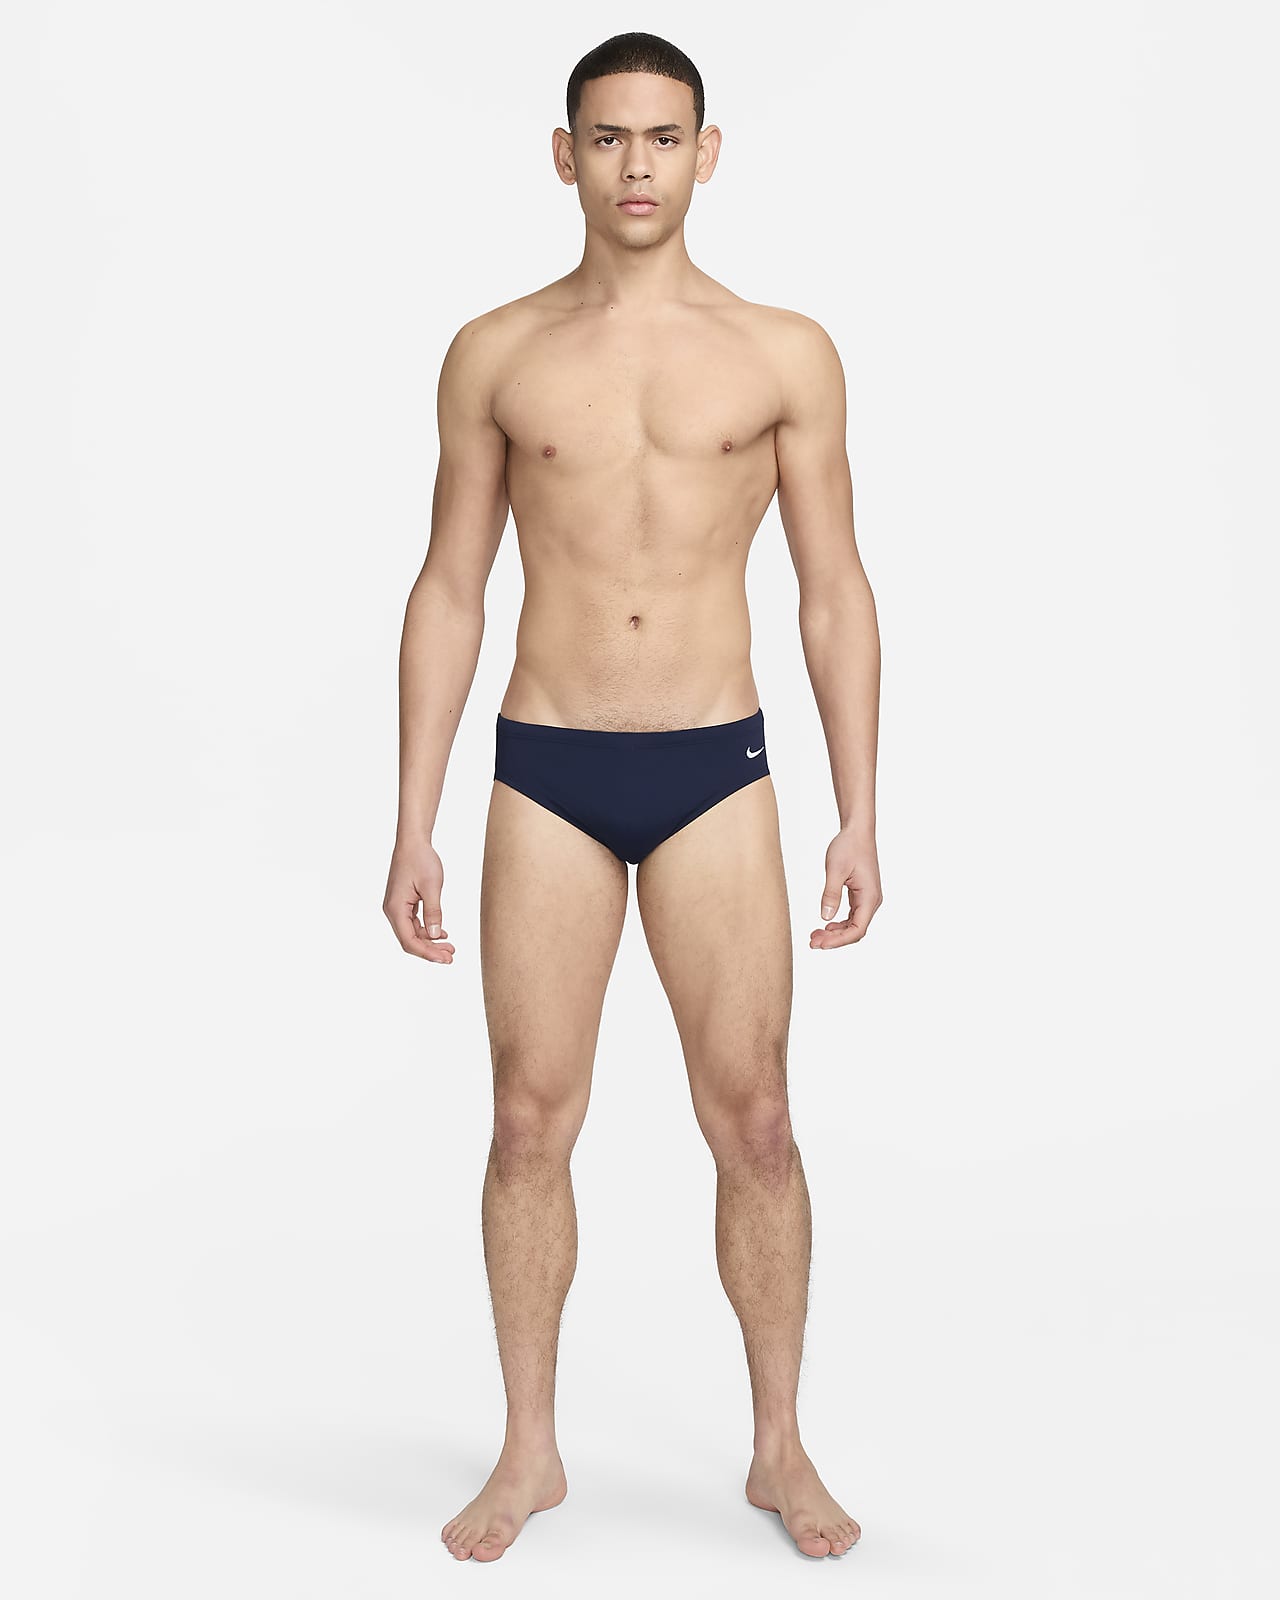 Nike Swim Men's Brief Swimsuit.